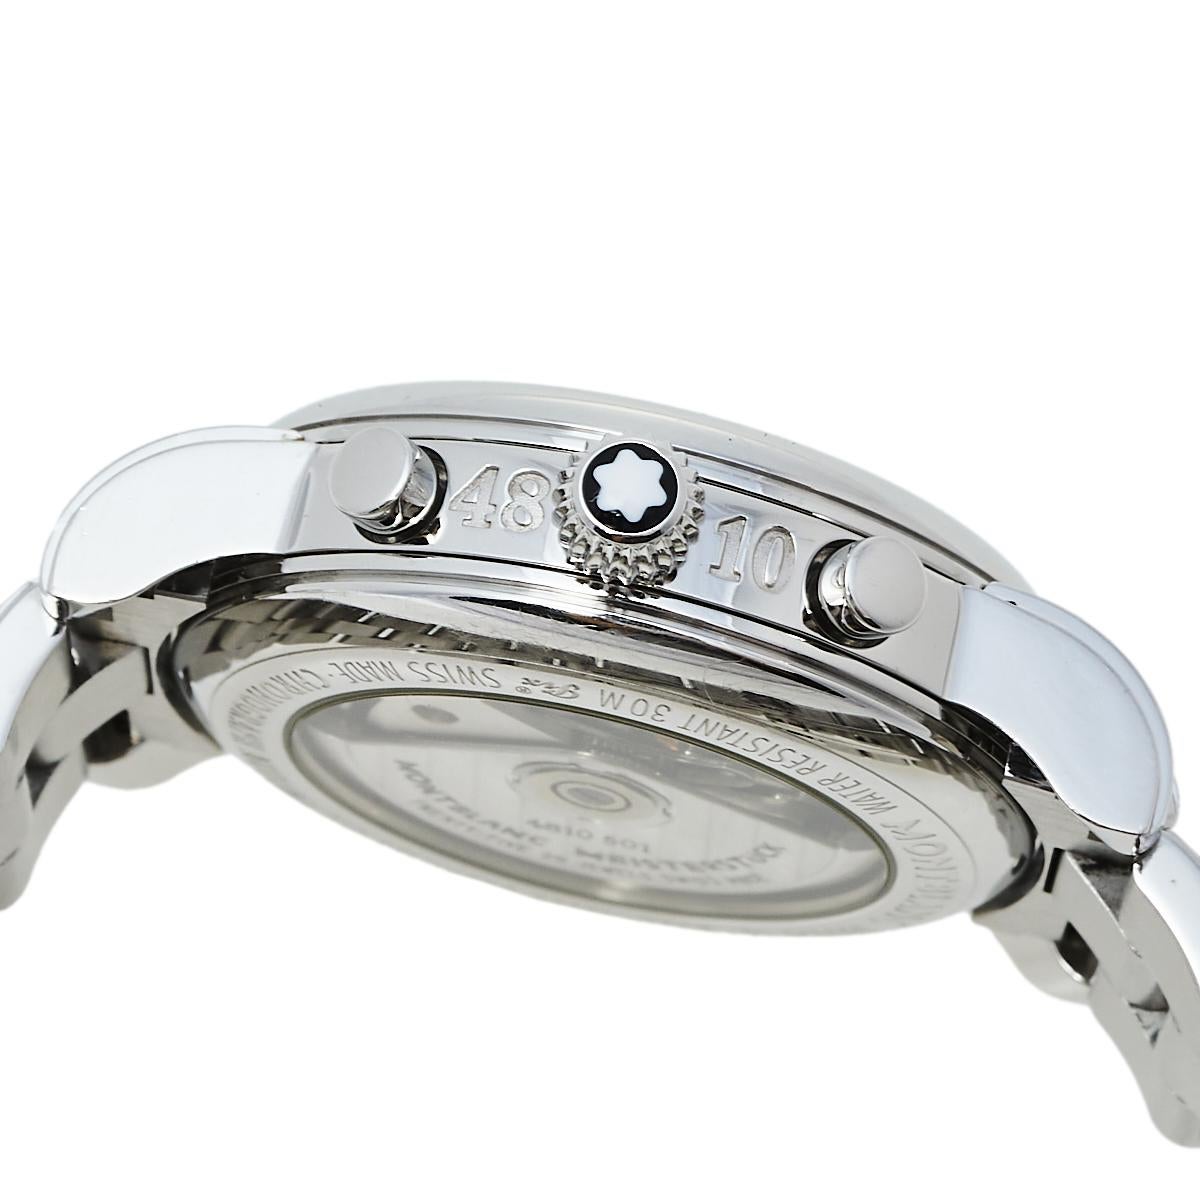 Montblanc Silver Stainless Steel Meisterstuck 7016 Men's Wristwatch 38 mm 1